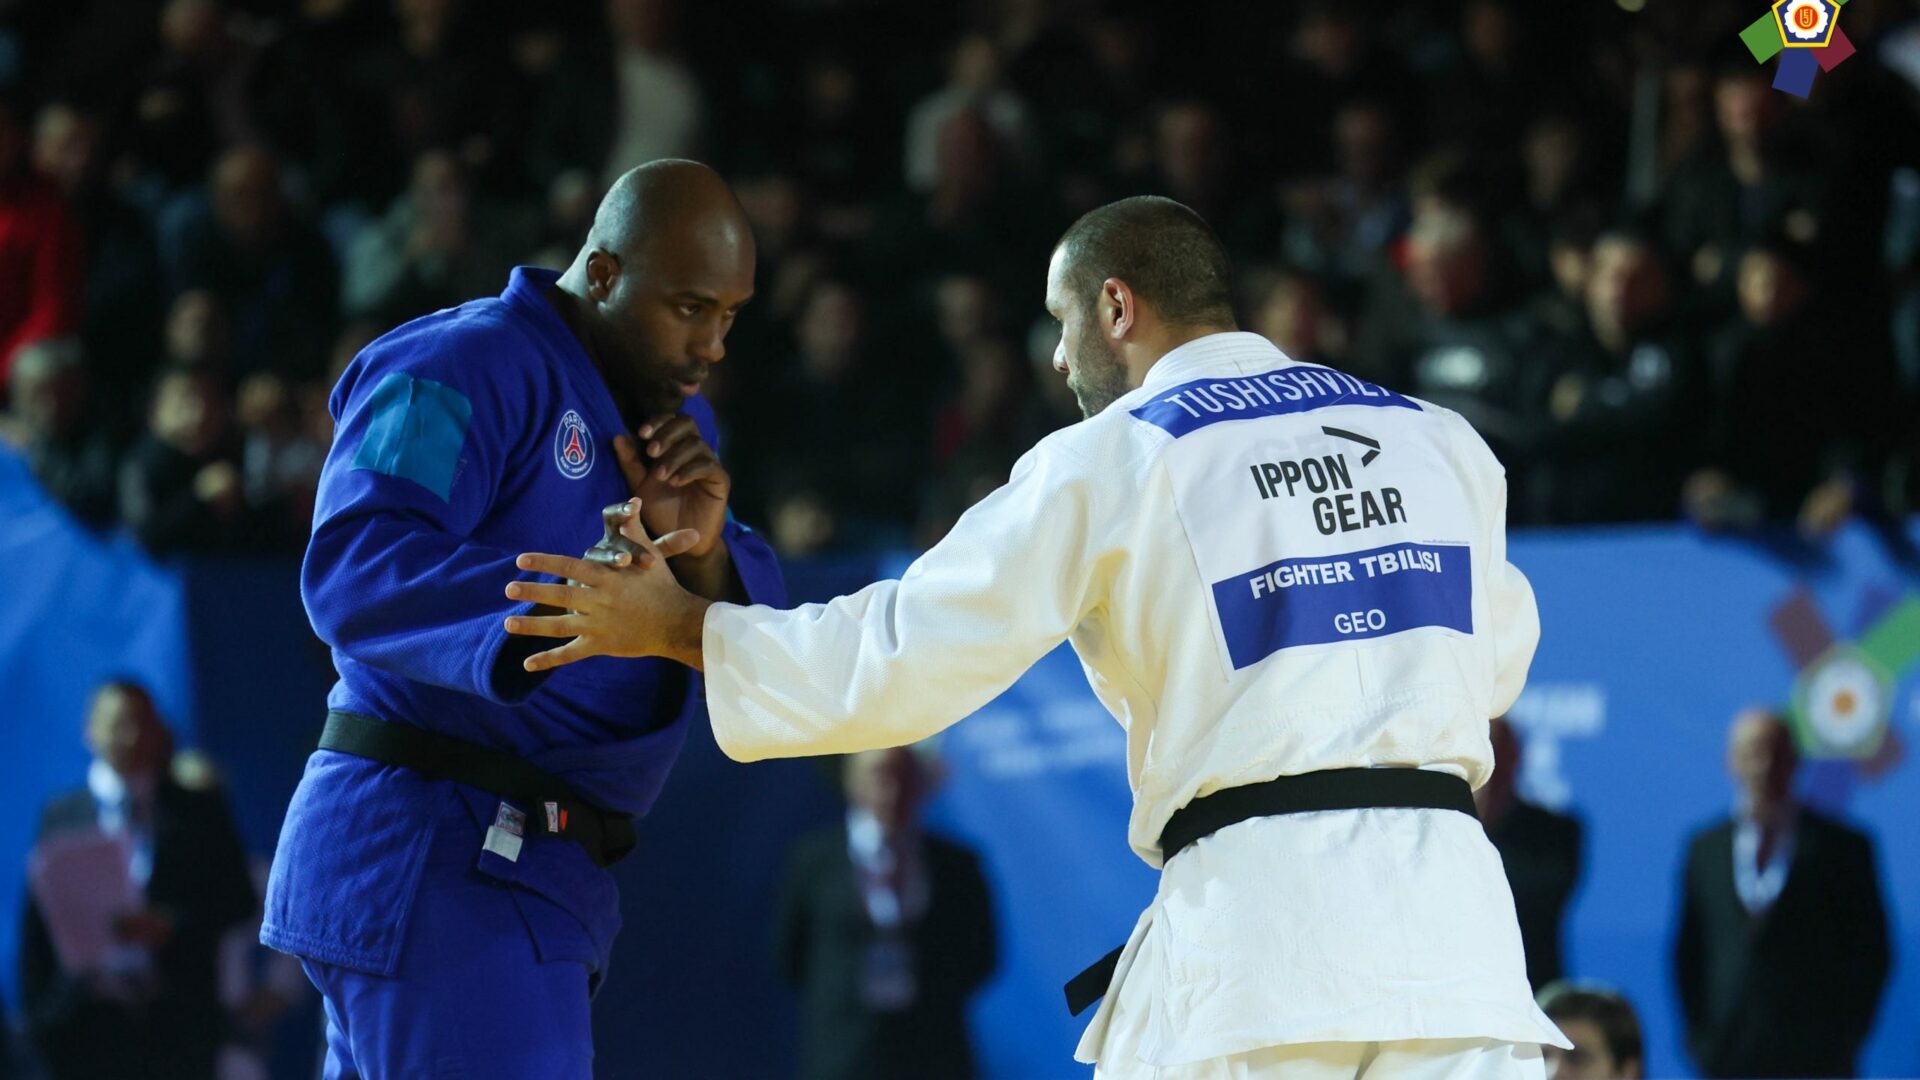 La Federación Internacional de Judo rectifica un error sobre la derrota de Teddy Riner en Gori